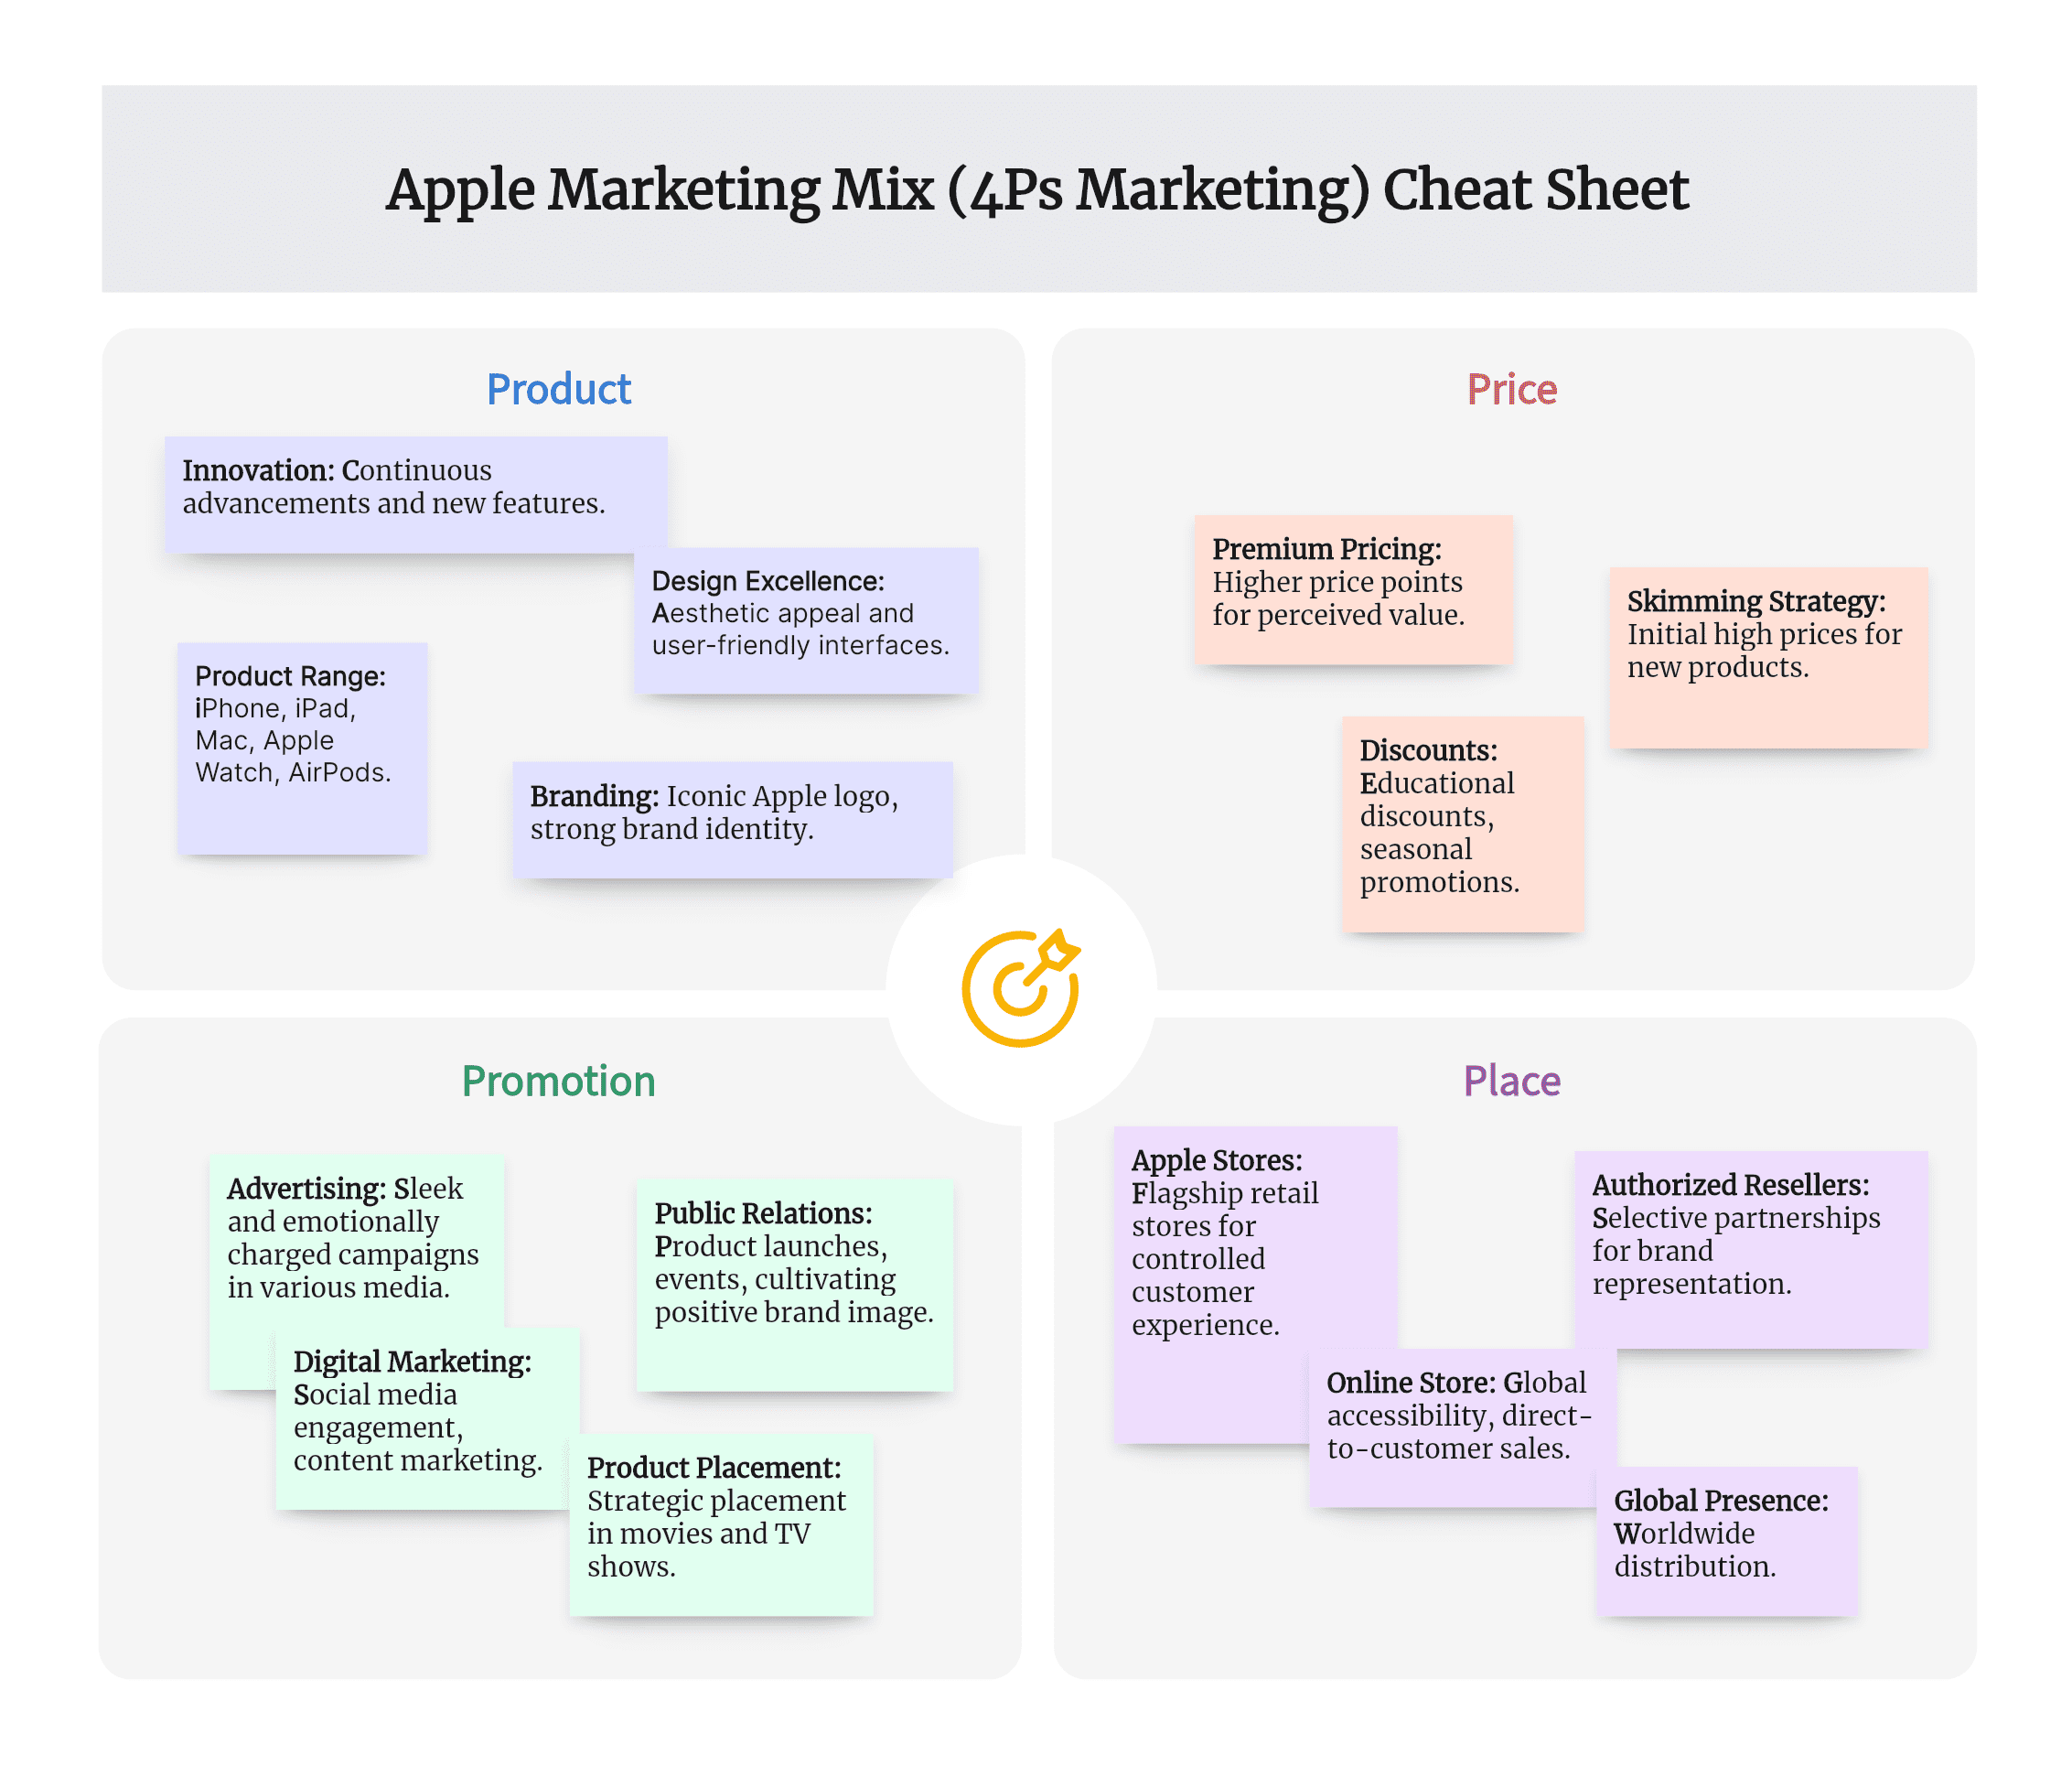 Apple Marketing Mix (4Ps) Analysis Cheat Sheet